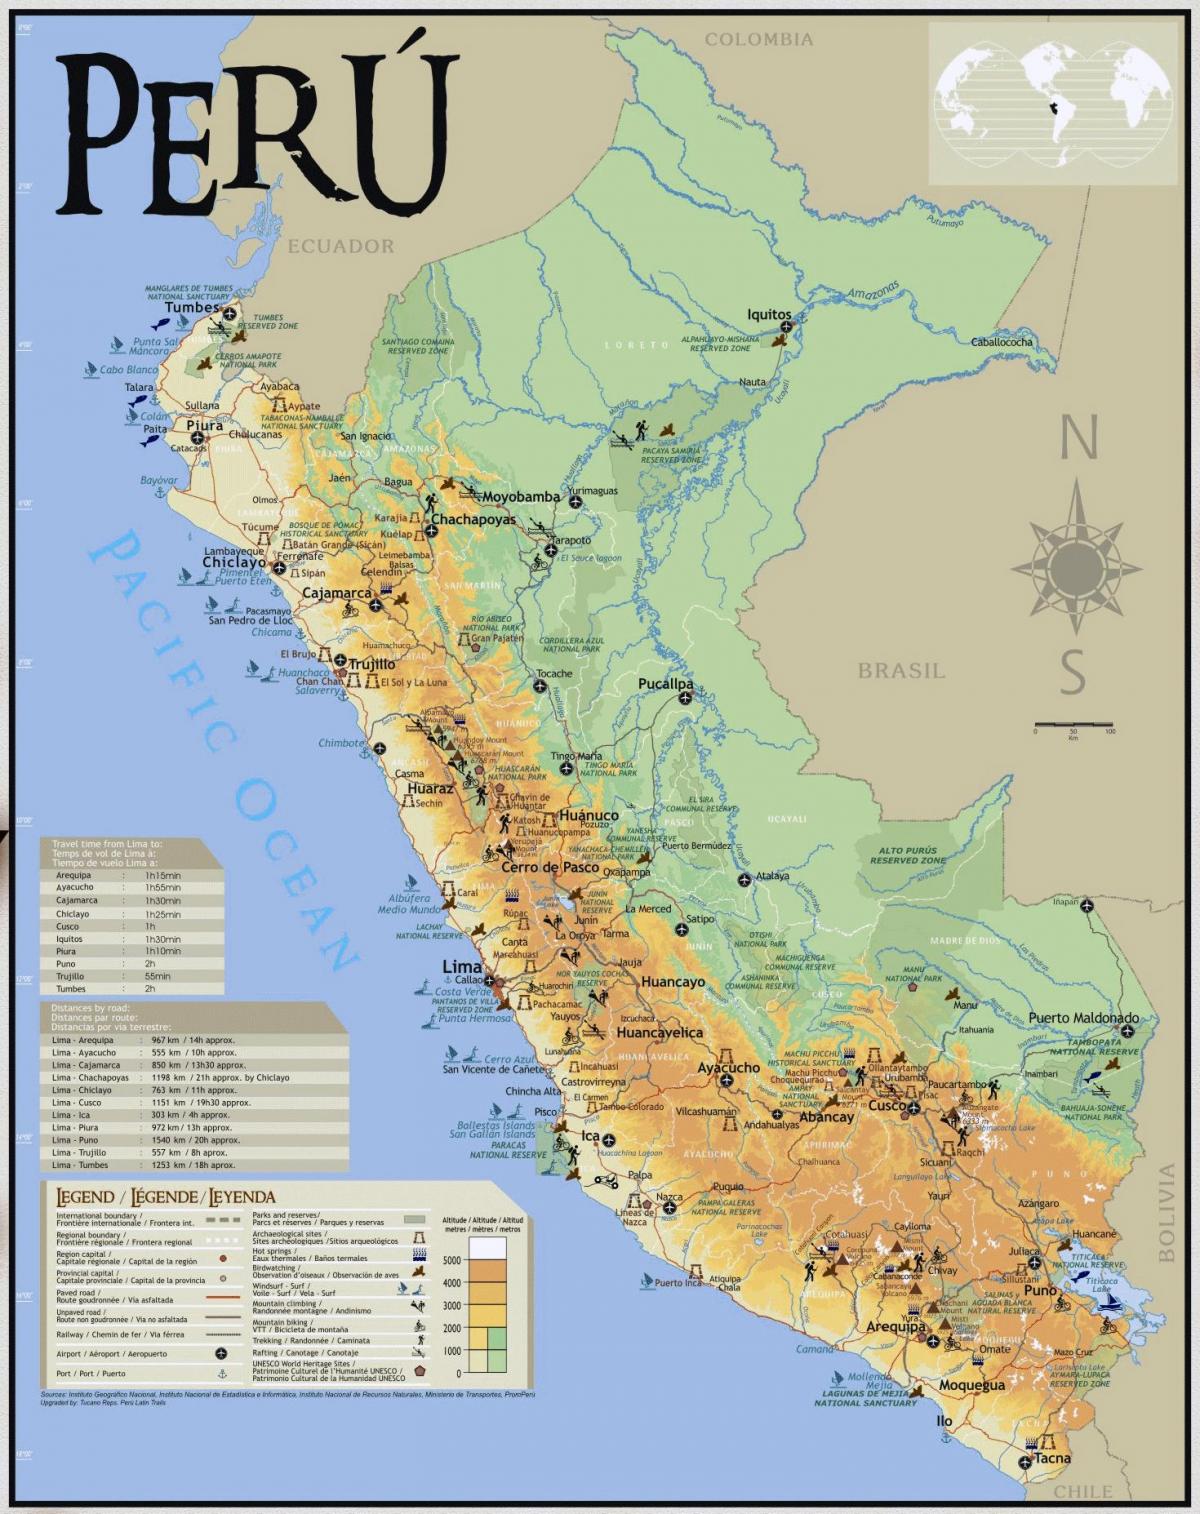 Peru wisata peta